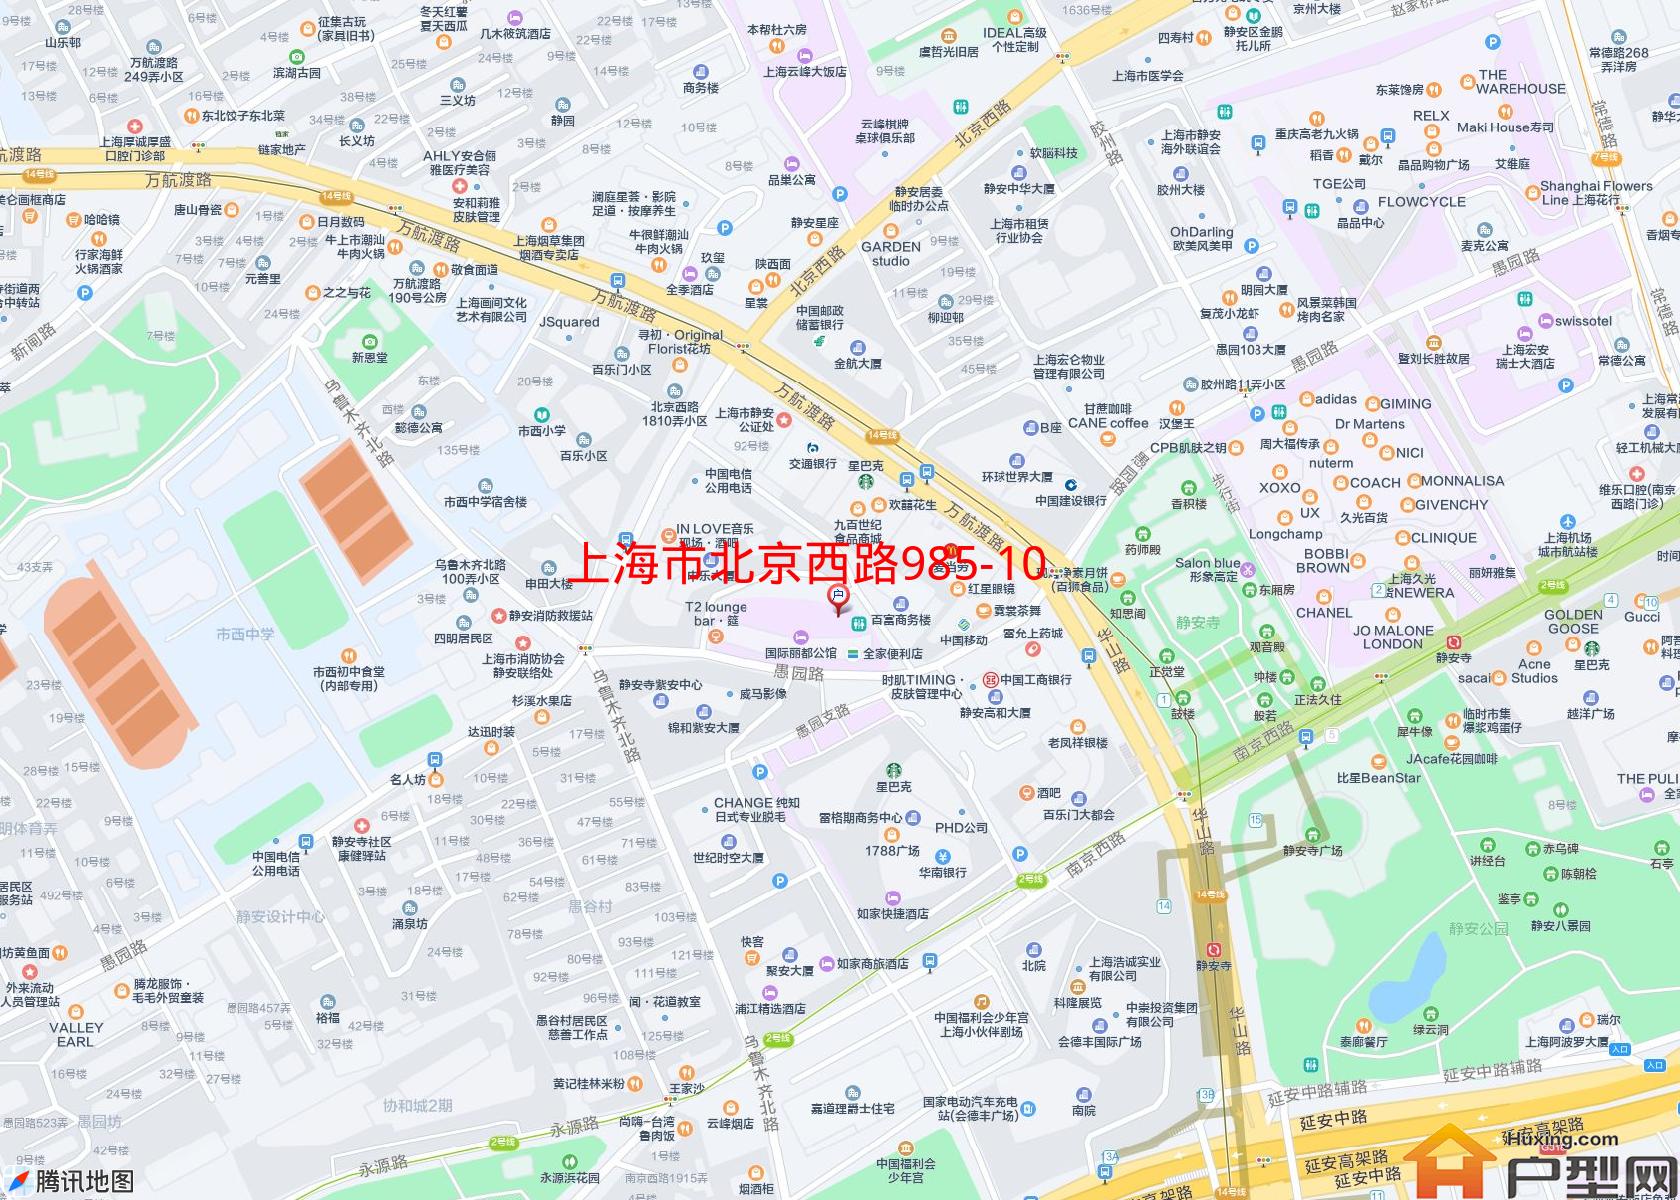 北京西路985-1003号小区小区 - 户型网